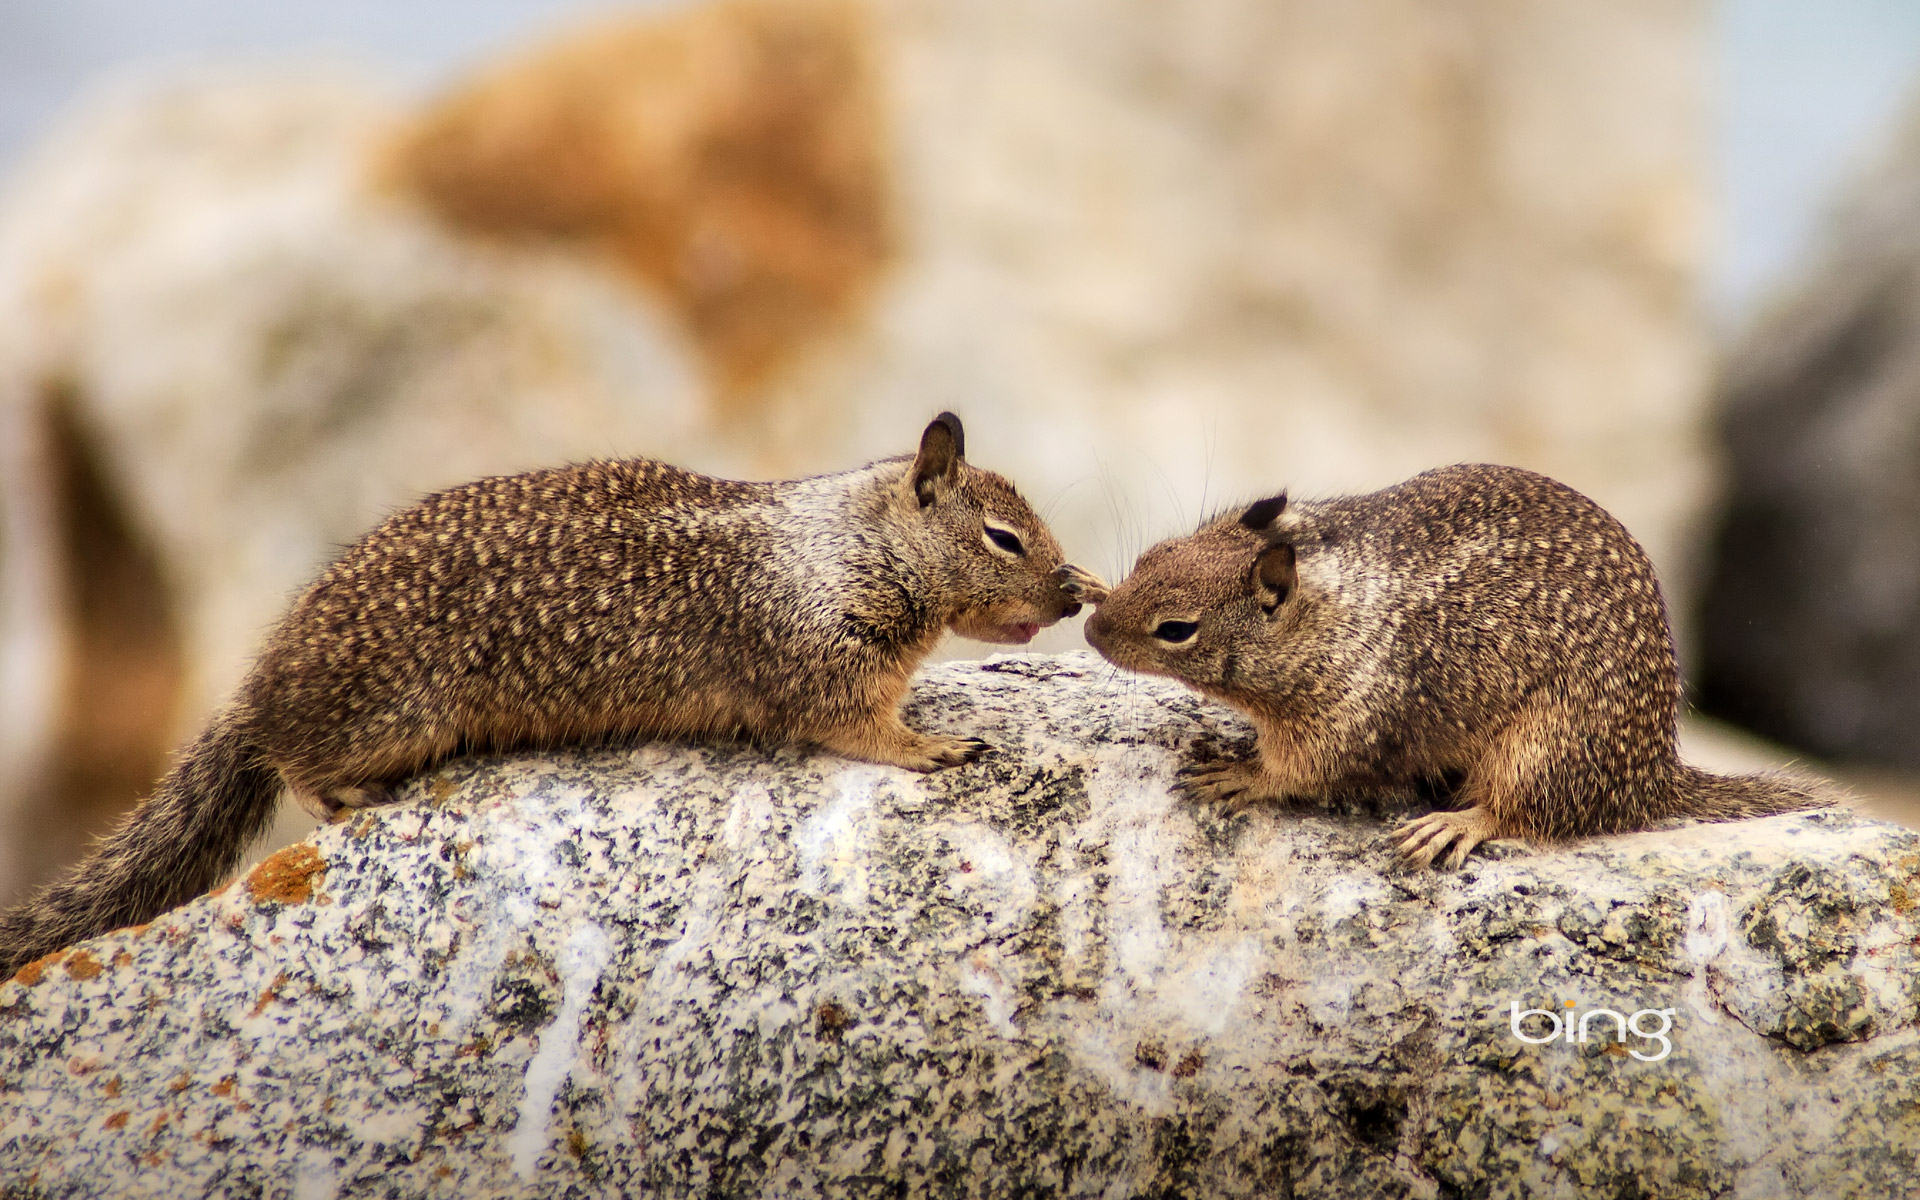 ground squirrels